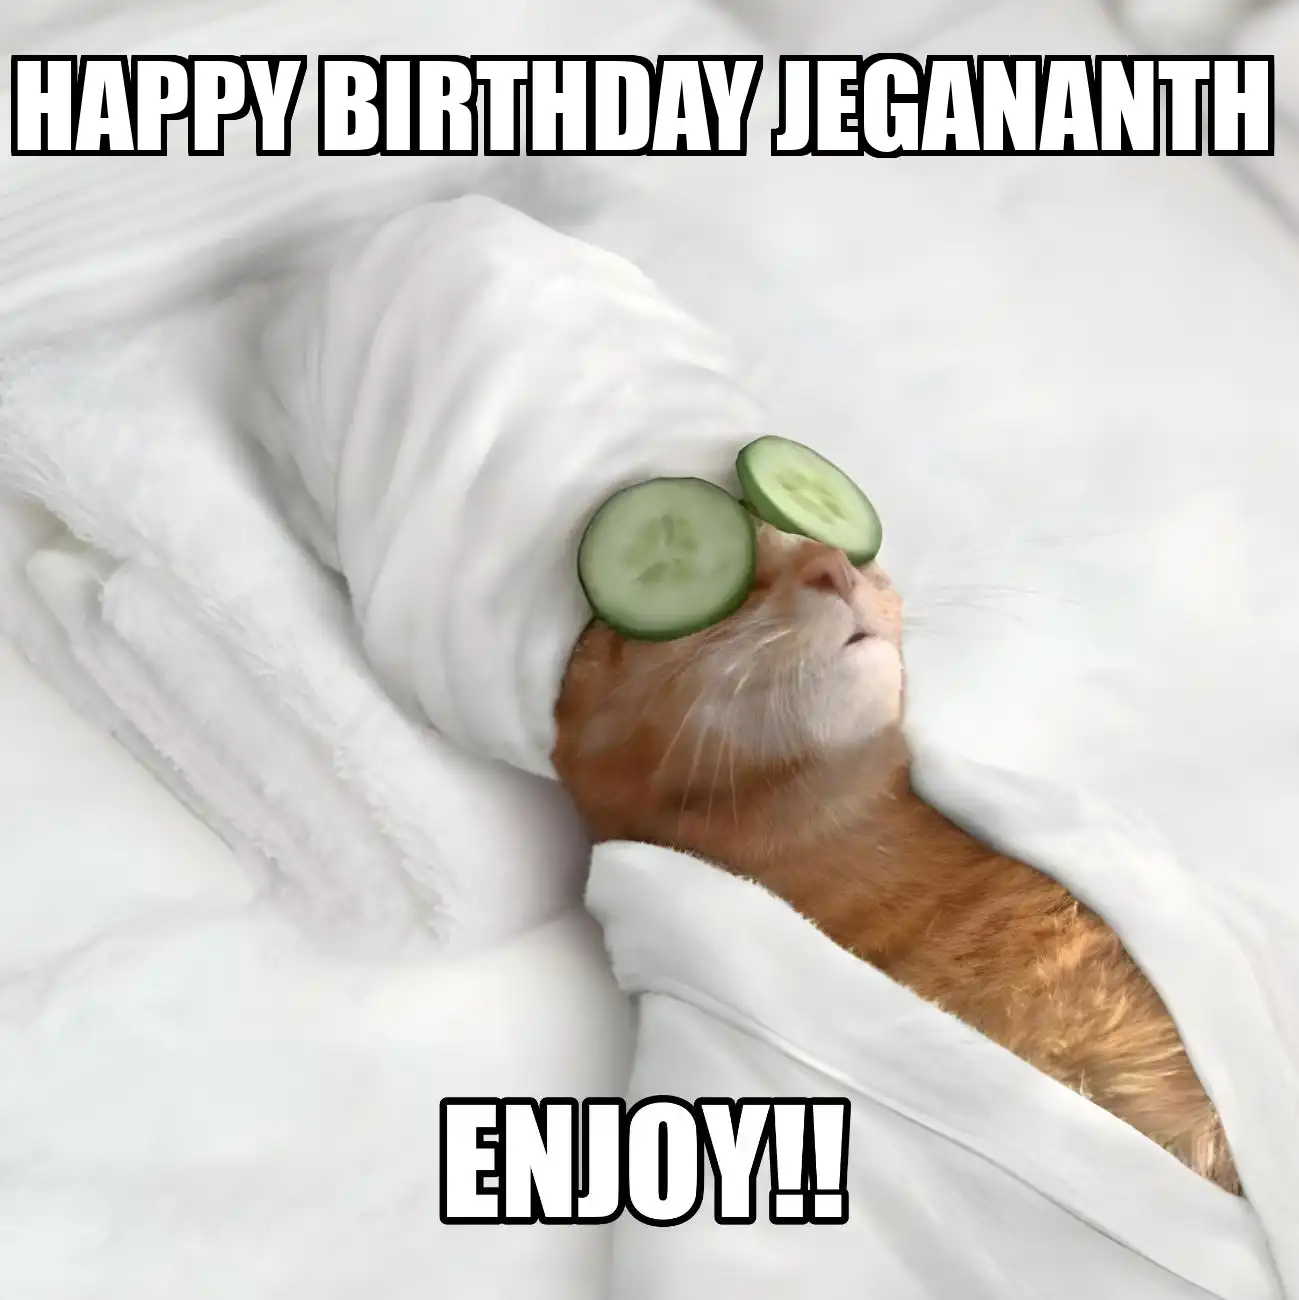 Happy Birthday Jegananth Enjoy Cat Meme